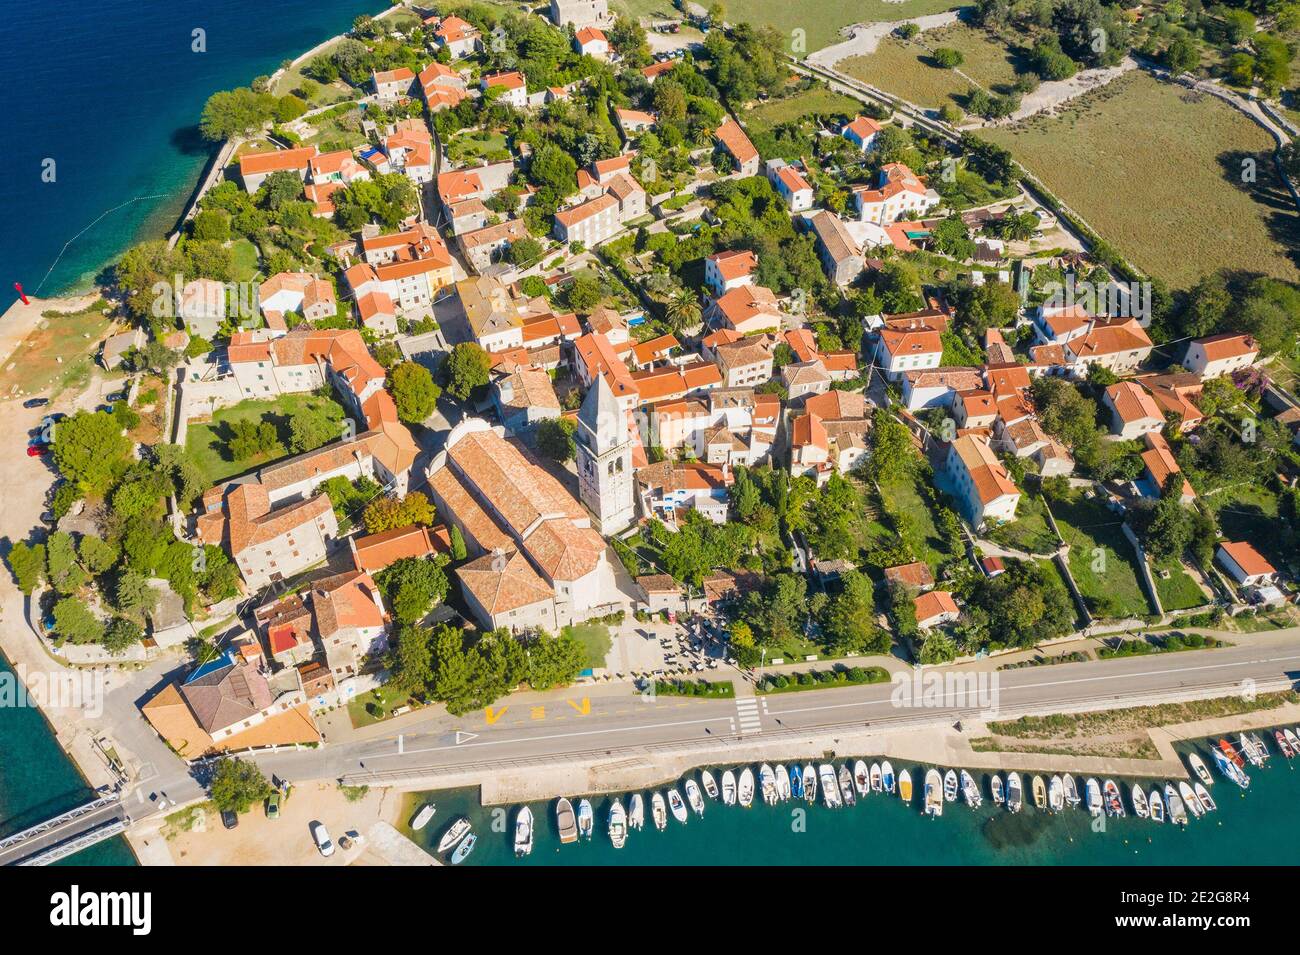 Vue panoramique de la vieille ville historique d'Osor sur l'île de Cres, Croatie, vue aérienne de drone Banque D'Images